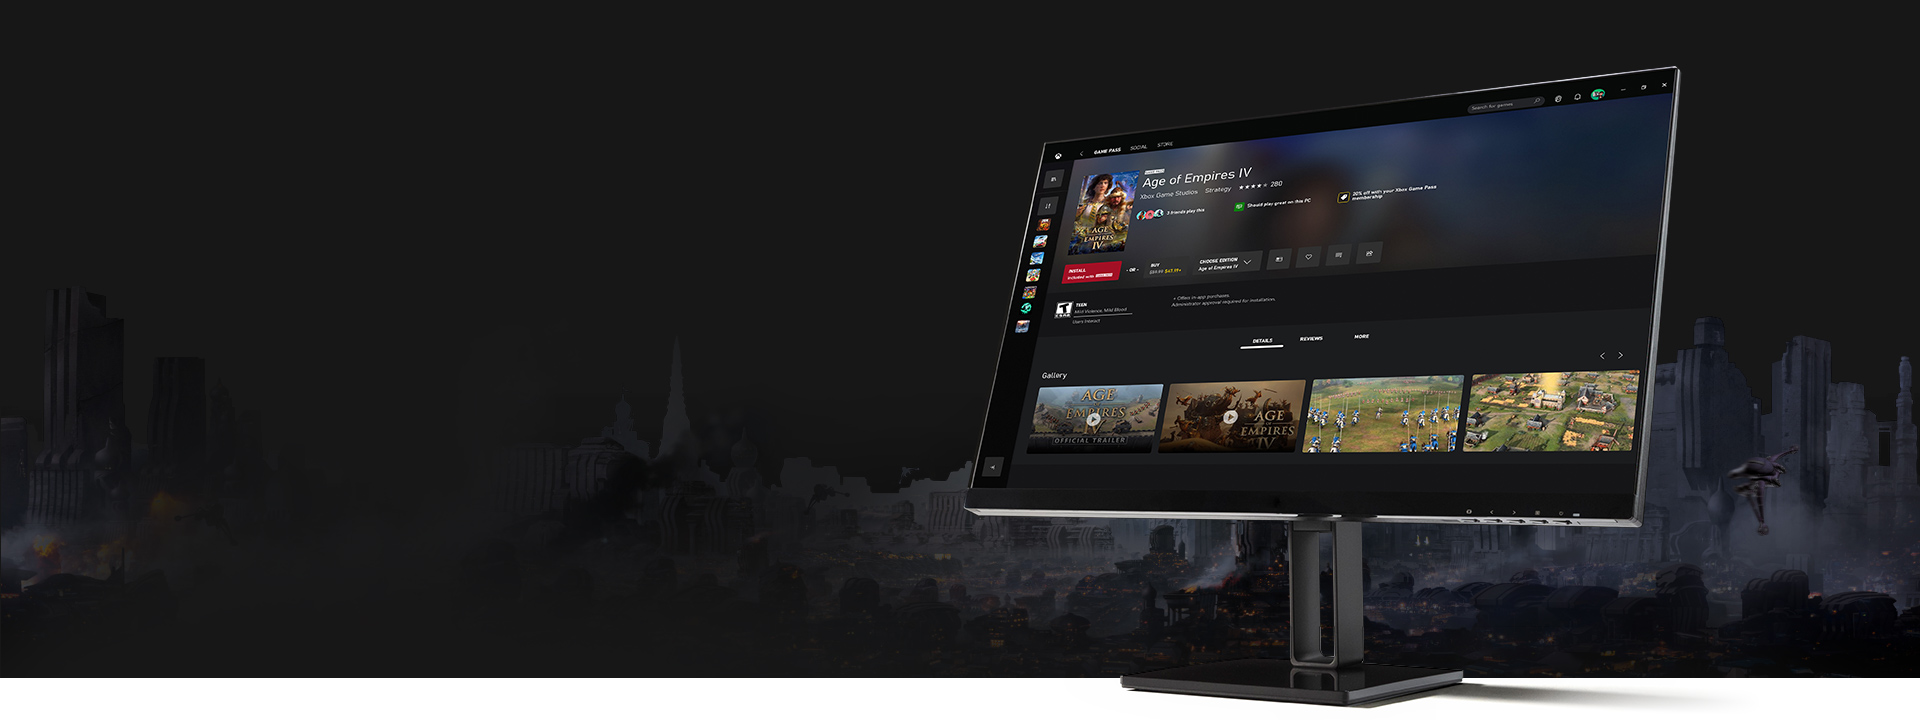 Monitor con la app Xbox para PC Windows que muestra la interfaz de usuario